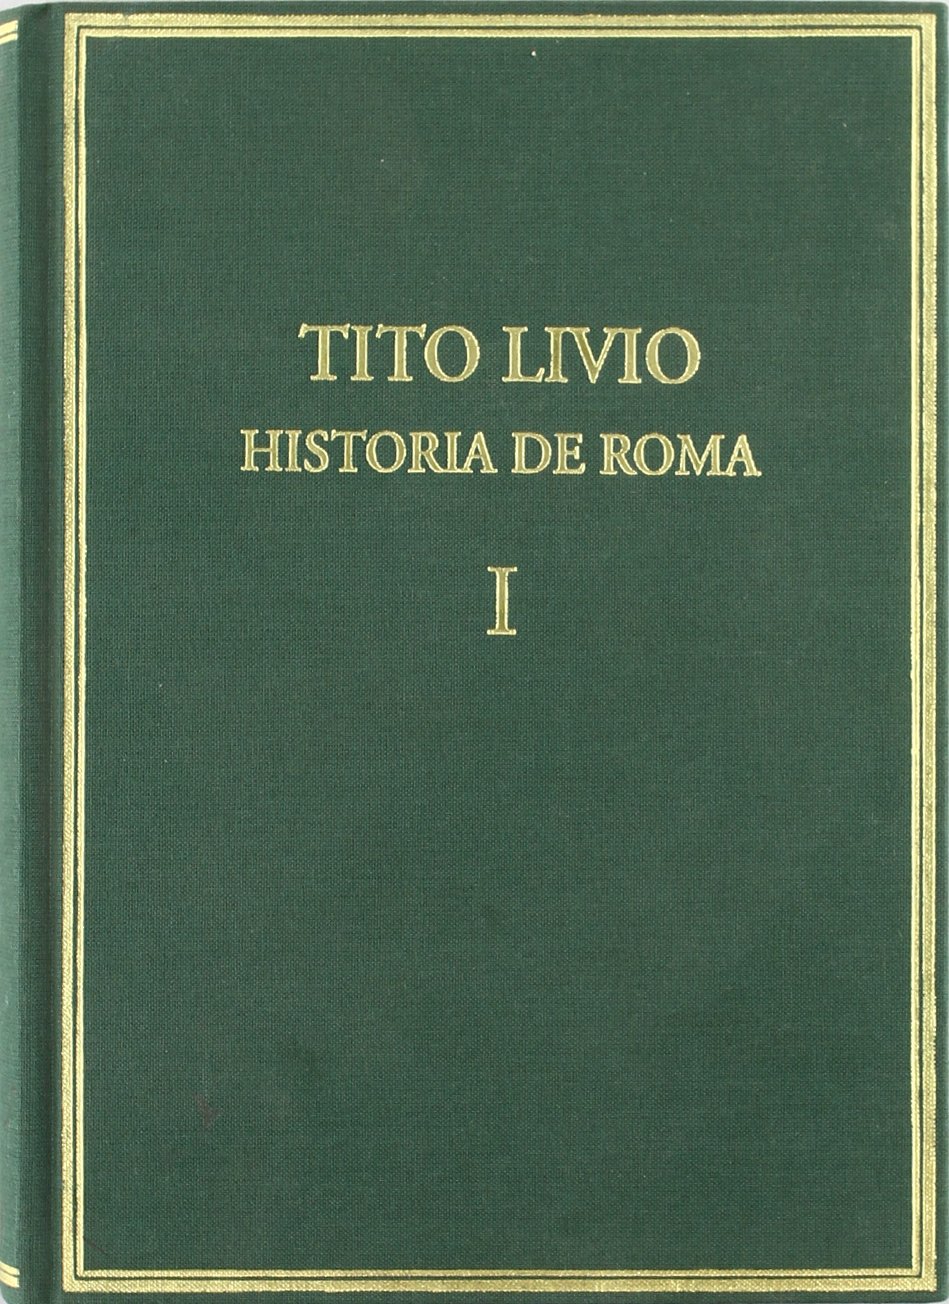 Historia de Roma desde la fundación de la ciudad=(Ab urbe condita)